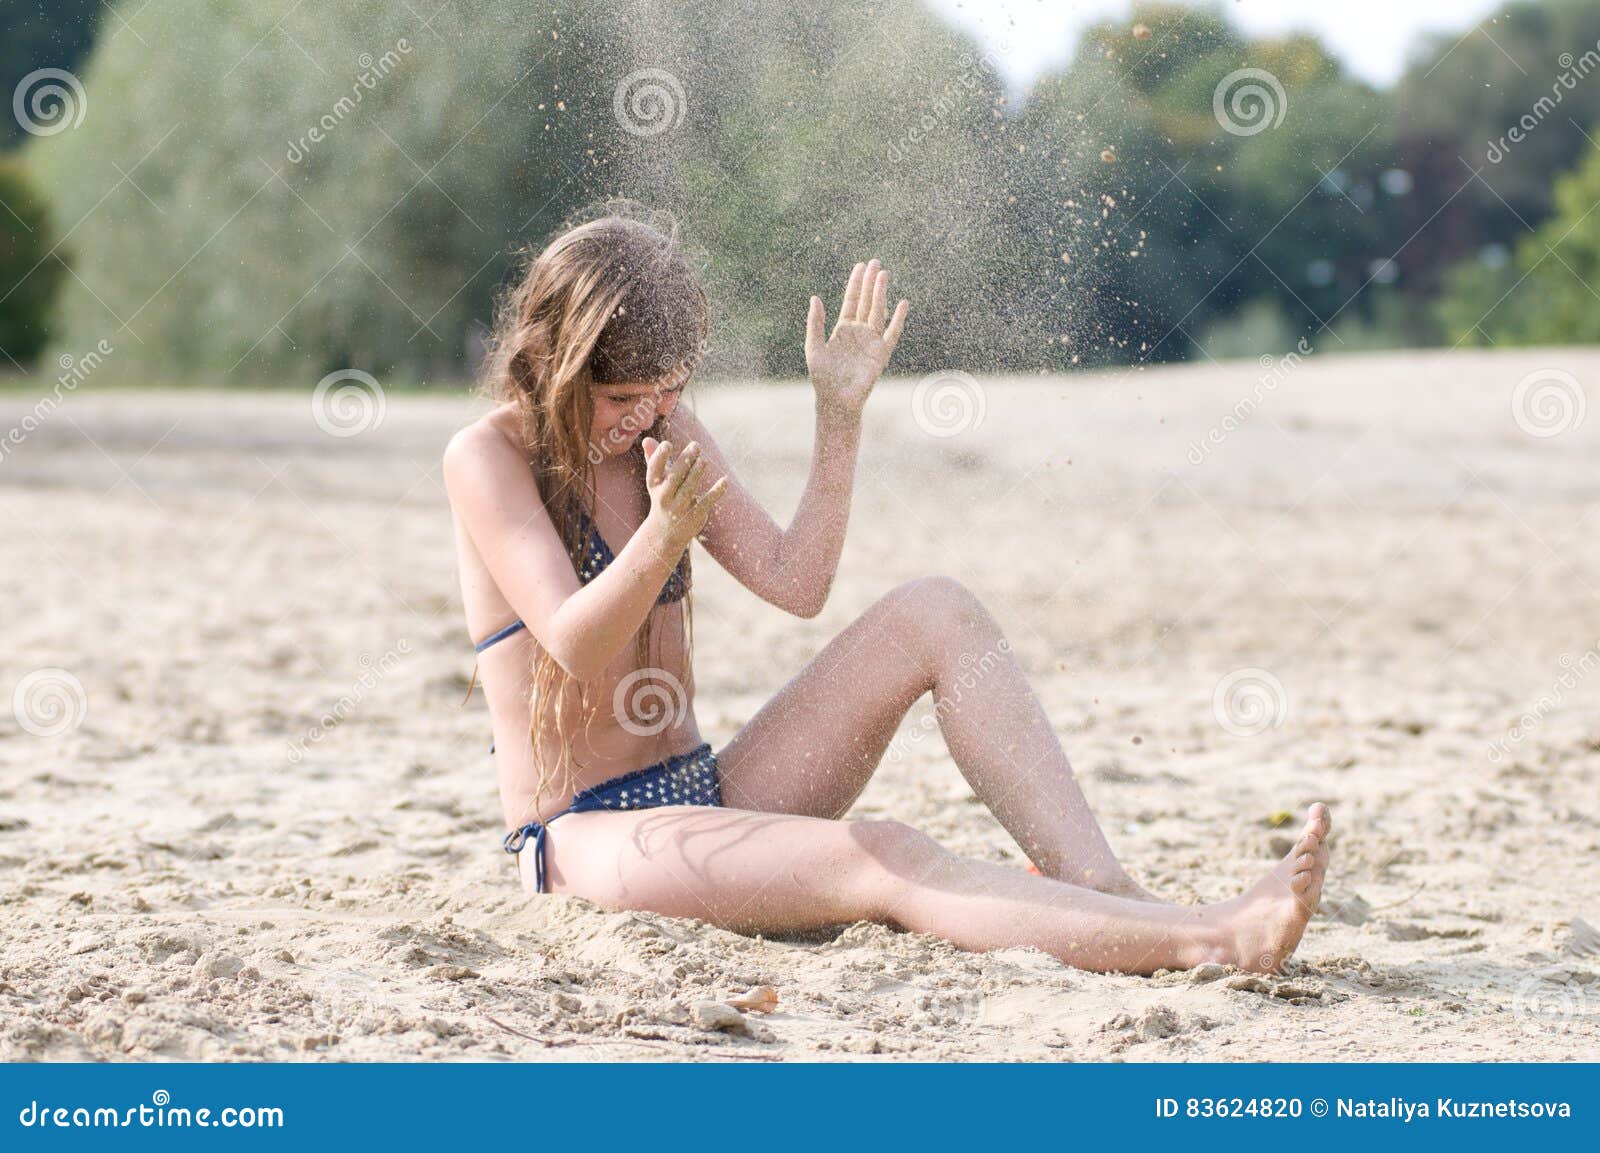 Фото Девочек 12 На Пляже